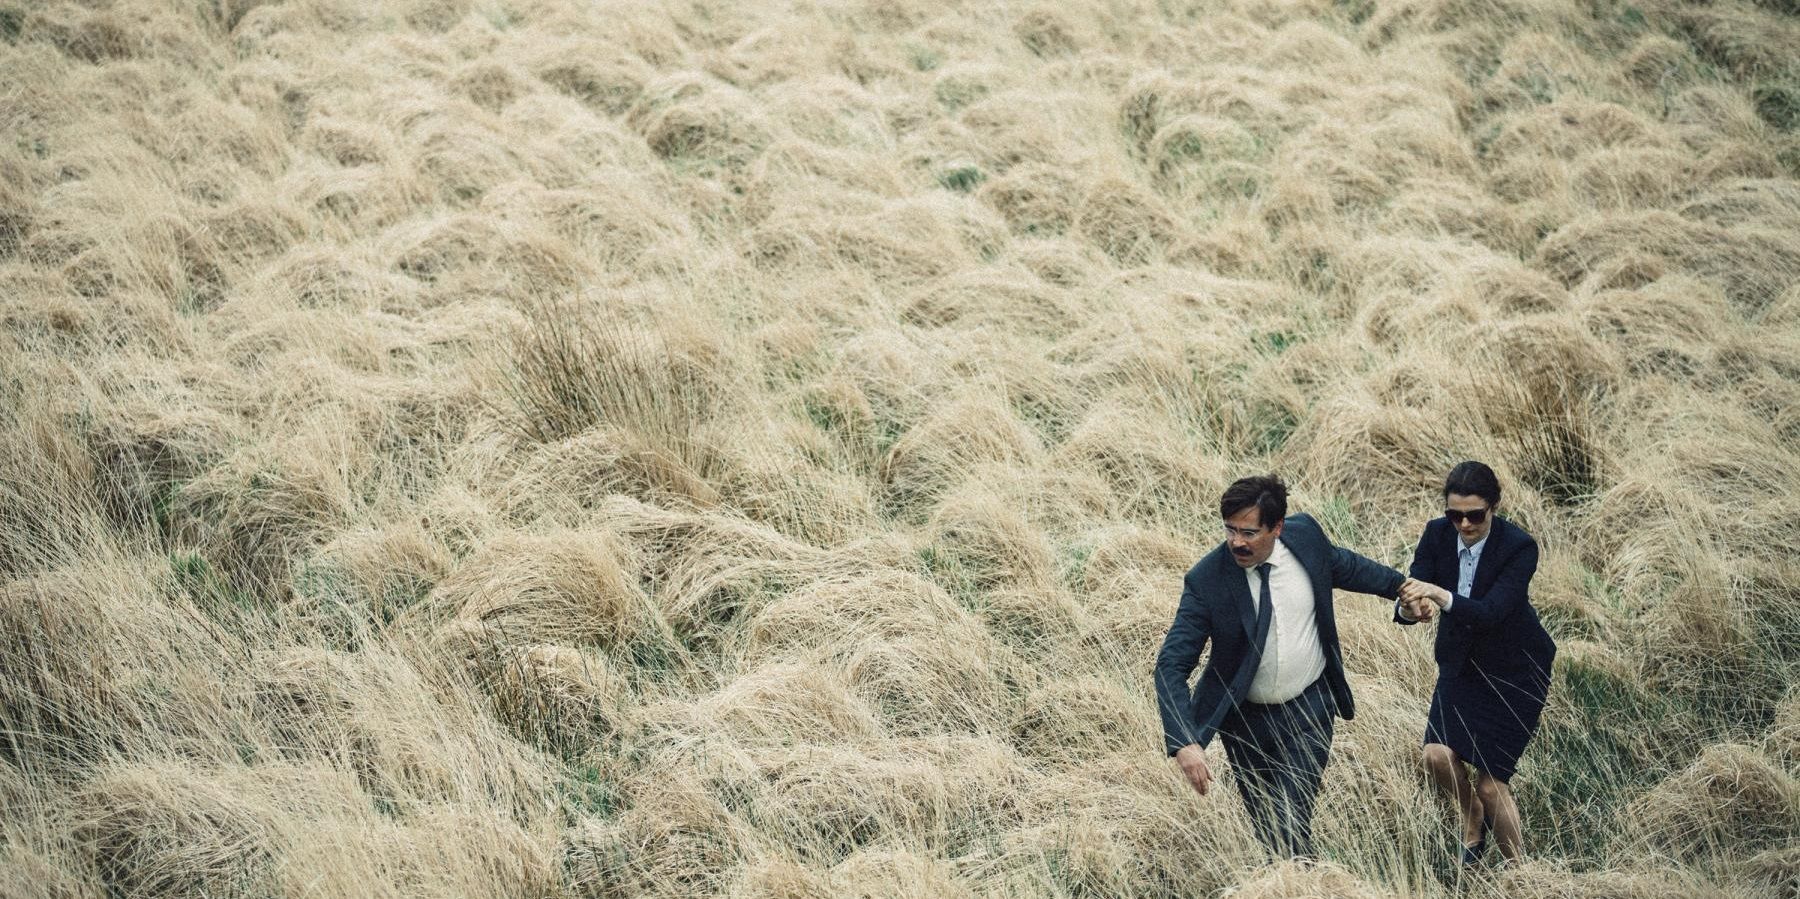 David (Colin Farrell) and the Shortsighted Woman (Rachel Weisz) trekking through a field inn The Lobster.